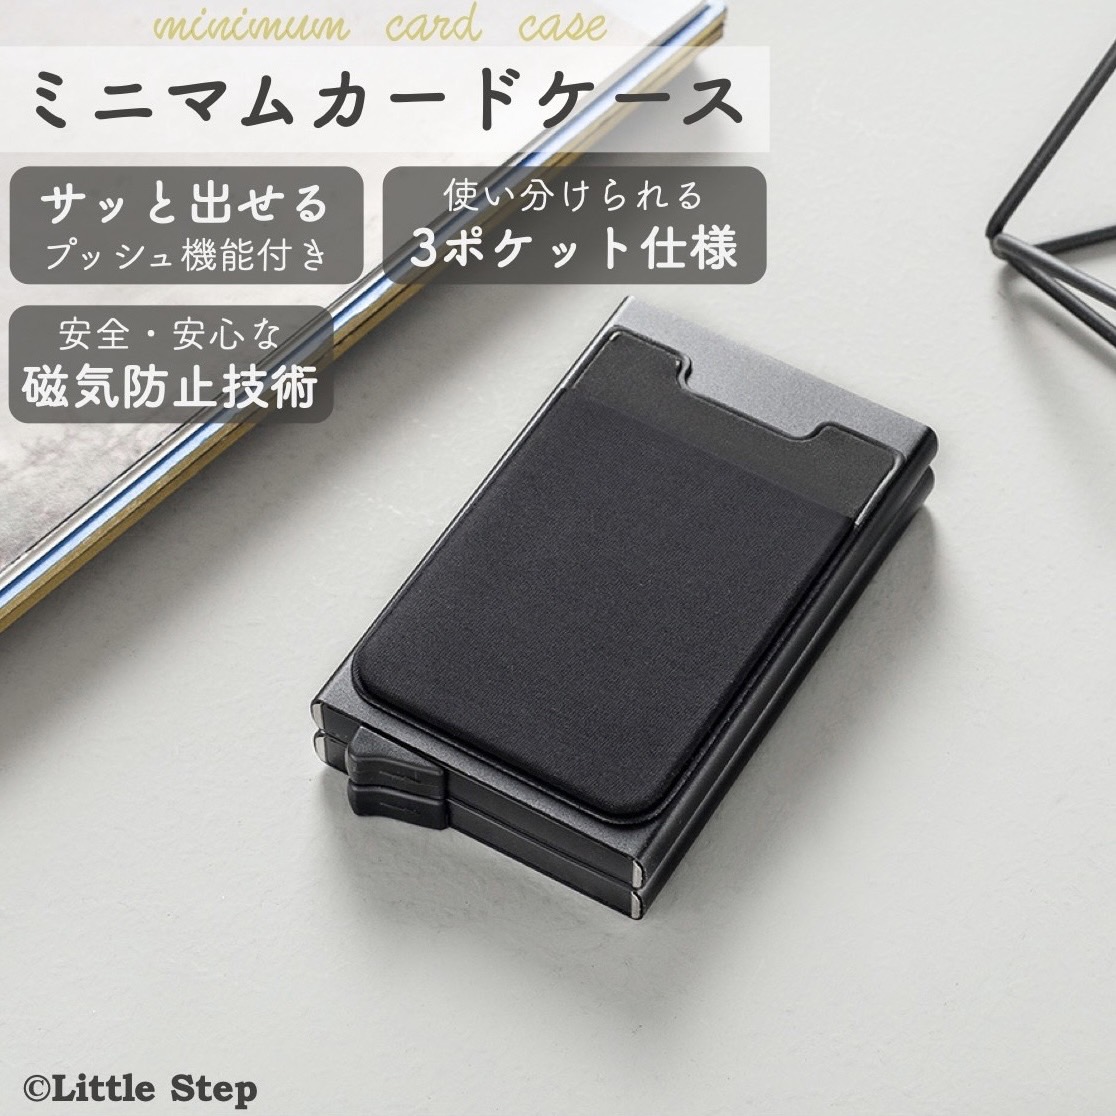 磁気防止カードケース スキミング防止 カードケース 大容量 メンズ レディース 薄型 スリム おしゃれ :int-438:リトルステップ 通販  